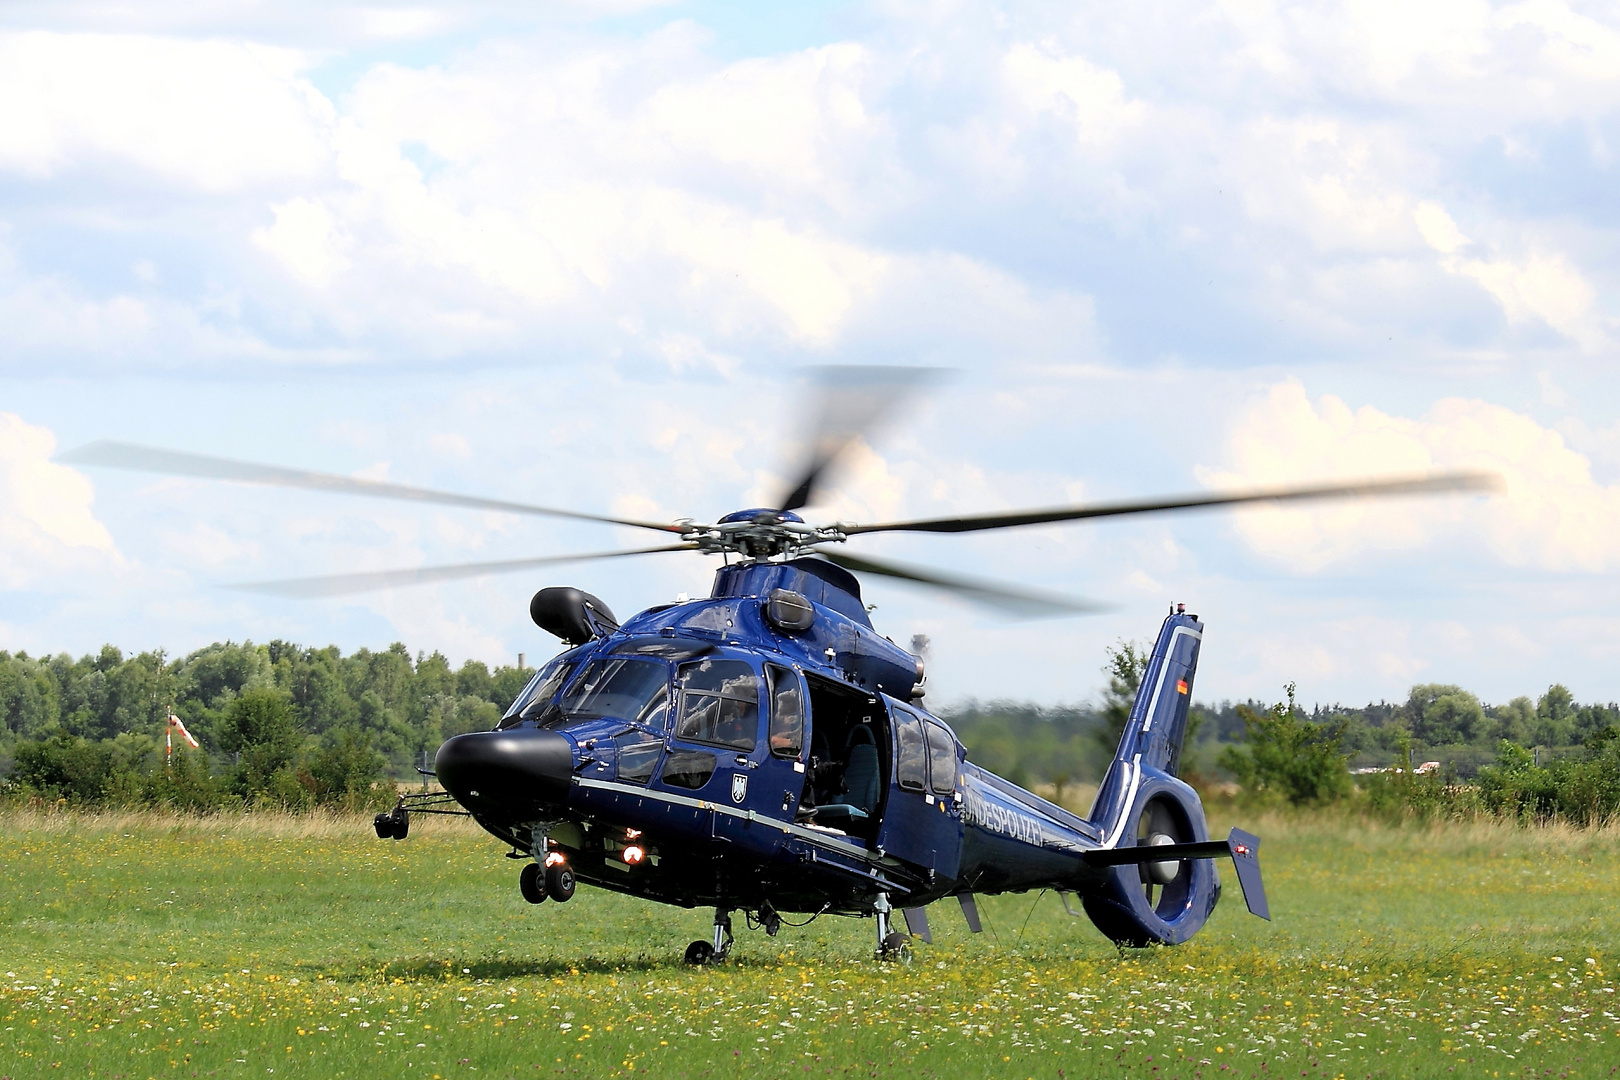 Eurocpter EC-155